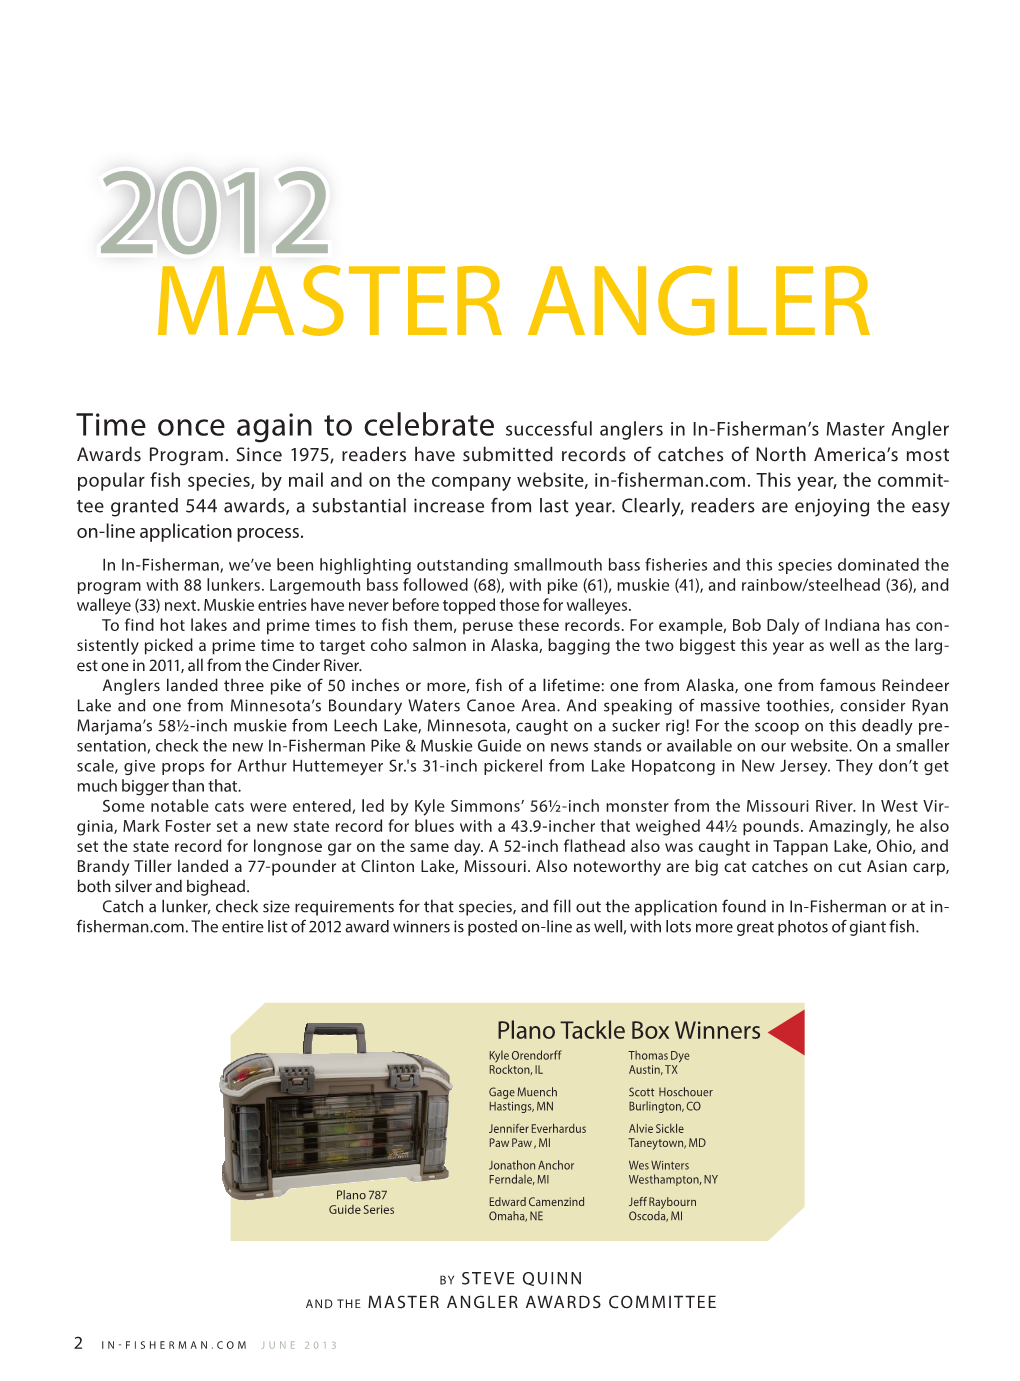 2012 MASTER ANGLER Highlights